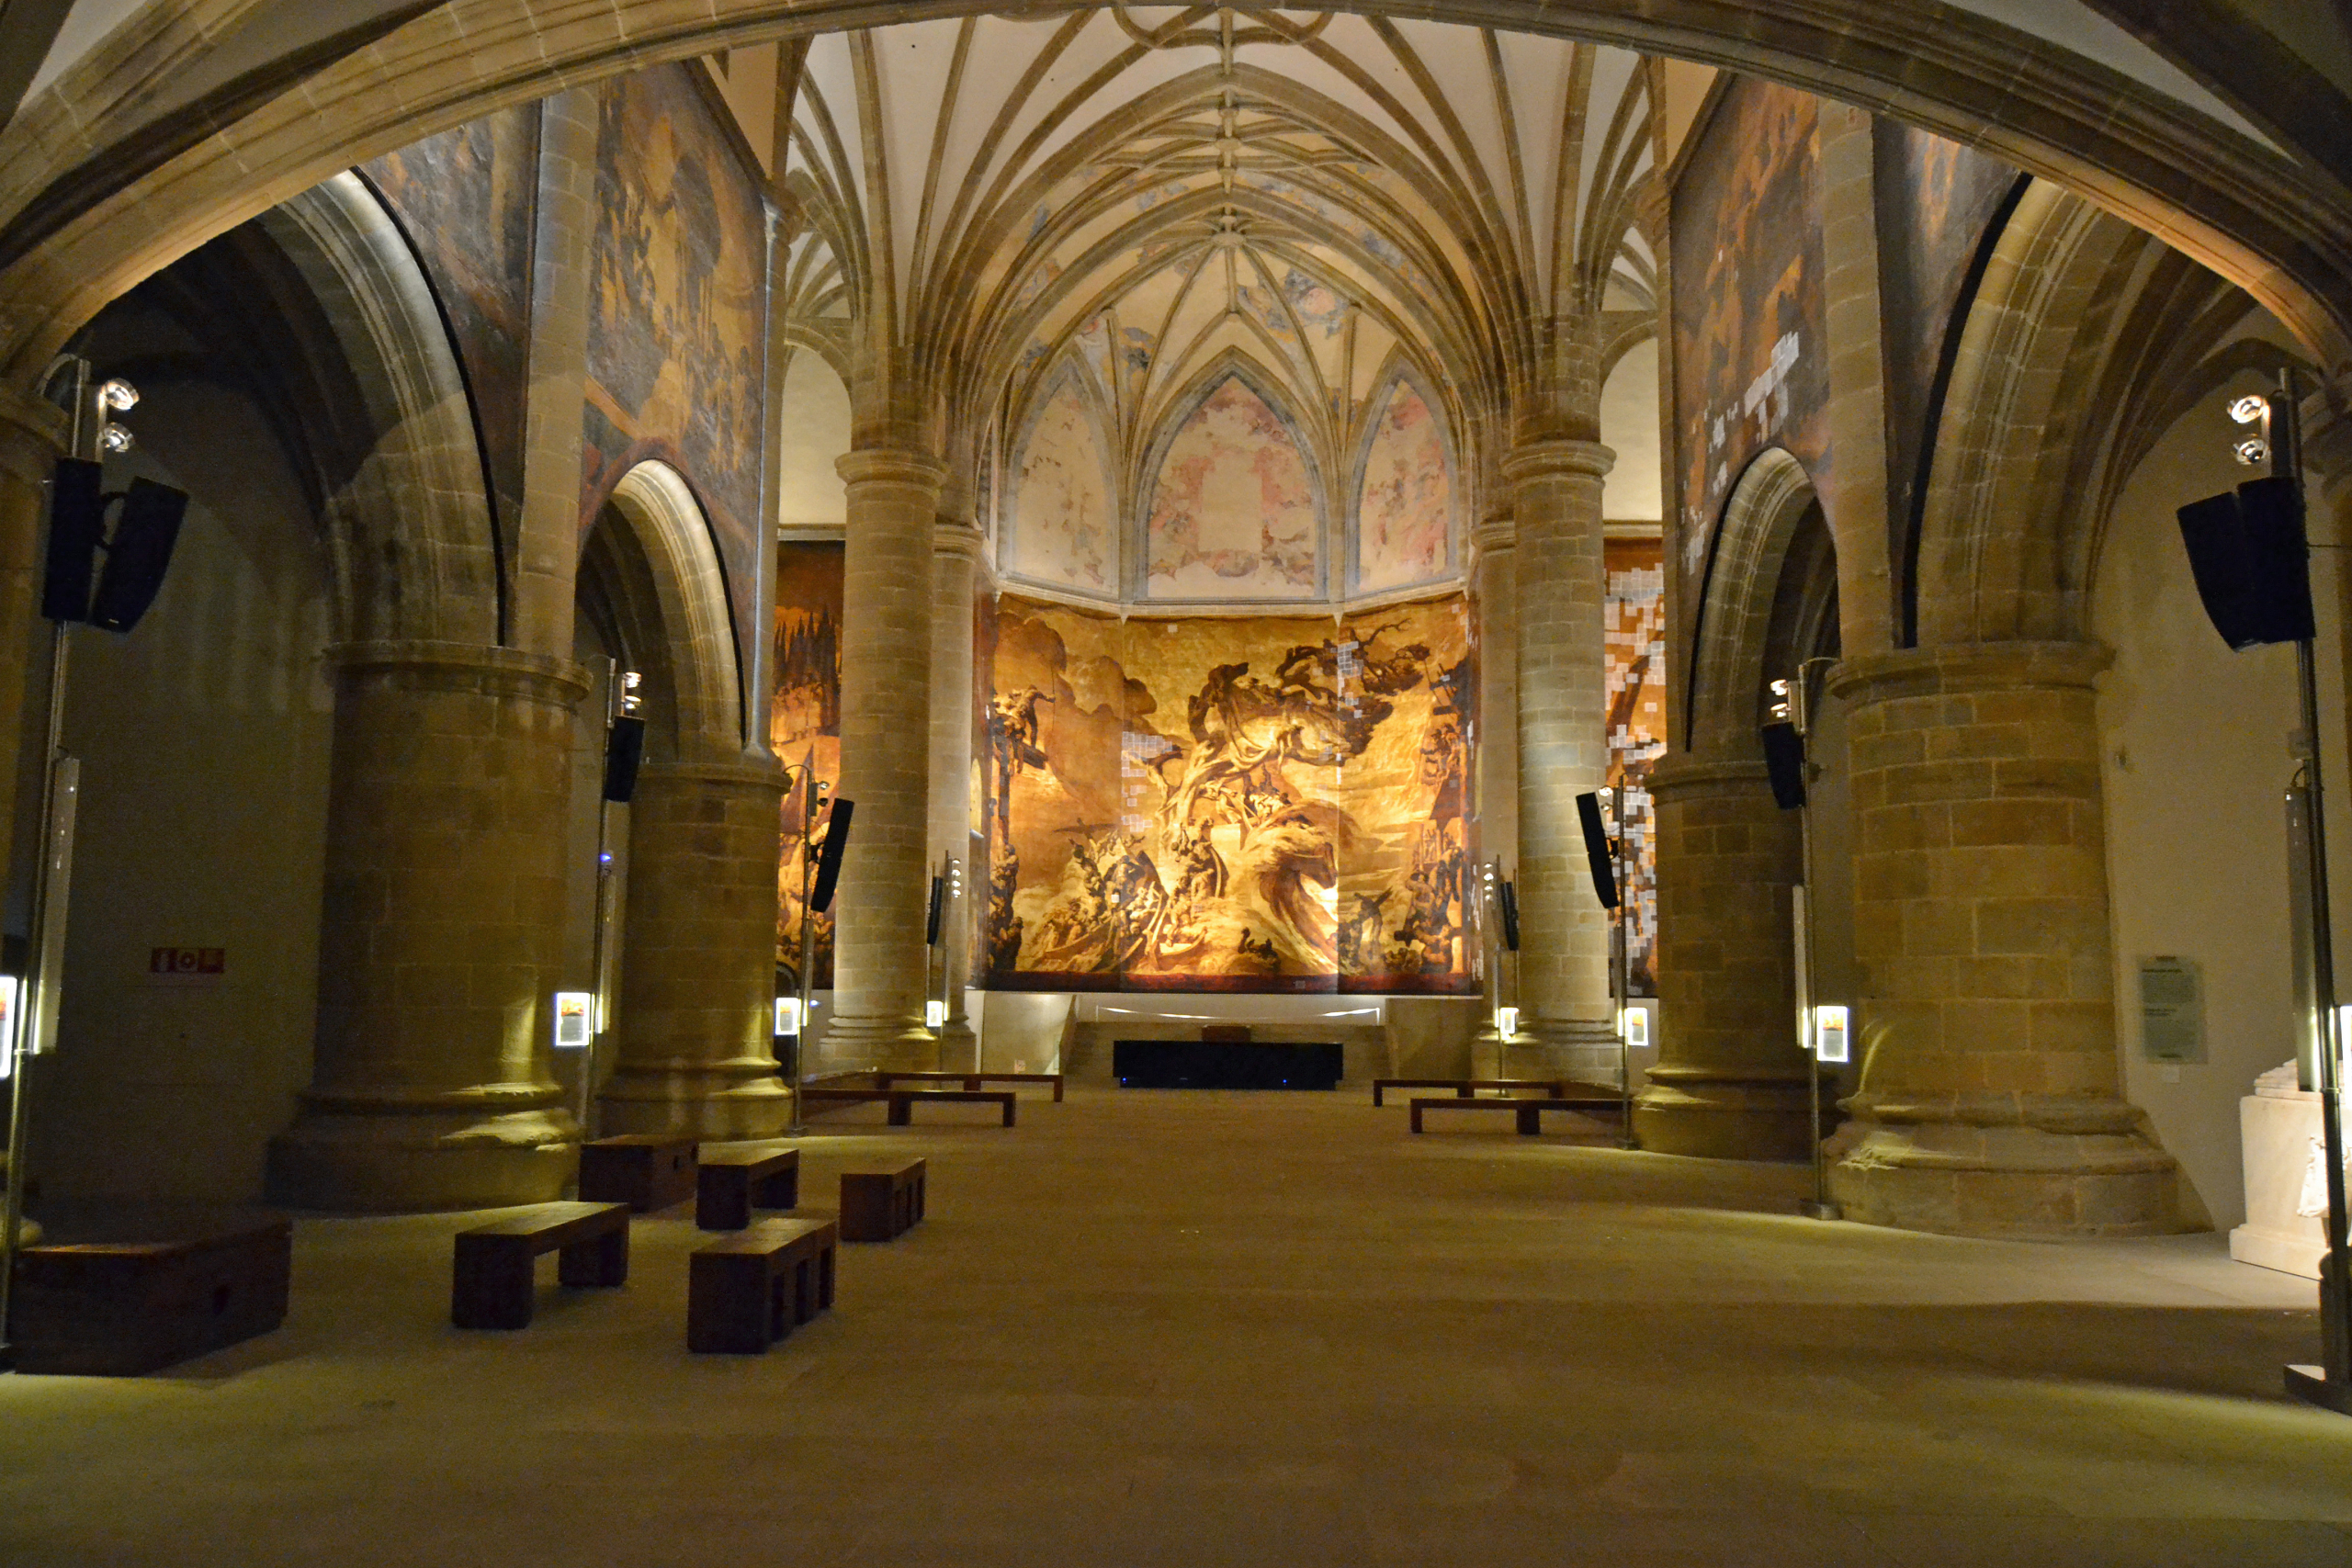 Cuatro museos imperdibles en San Sebastián - El museo San Telmo presenta una iglesia con pinturas al fresco